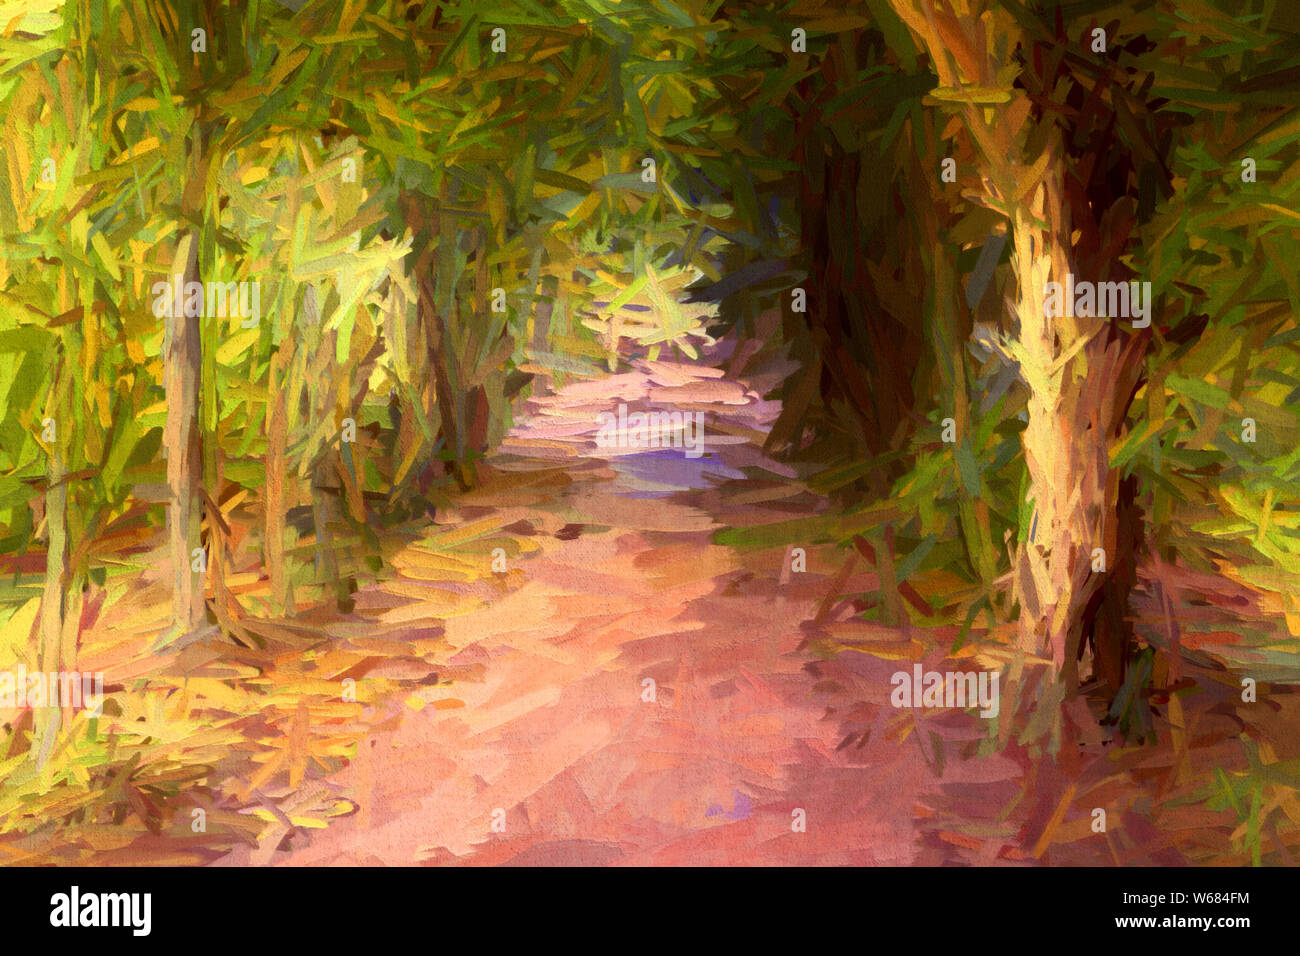 La peinture abstraite de l'avenue de l'arbre long et sombre dans un vieux parc à l'anglaise dans un style impressionniste. Banque D'Images